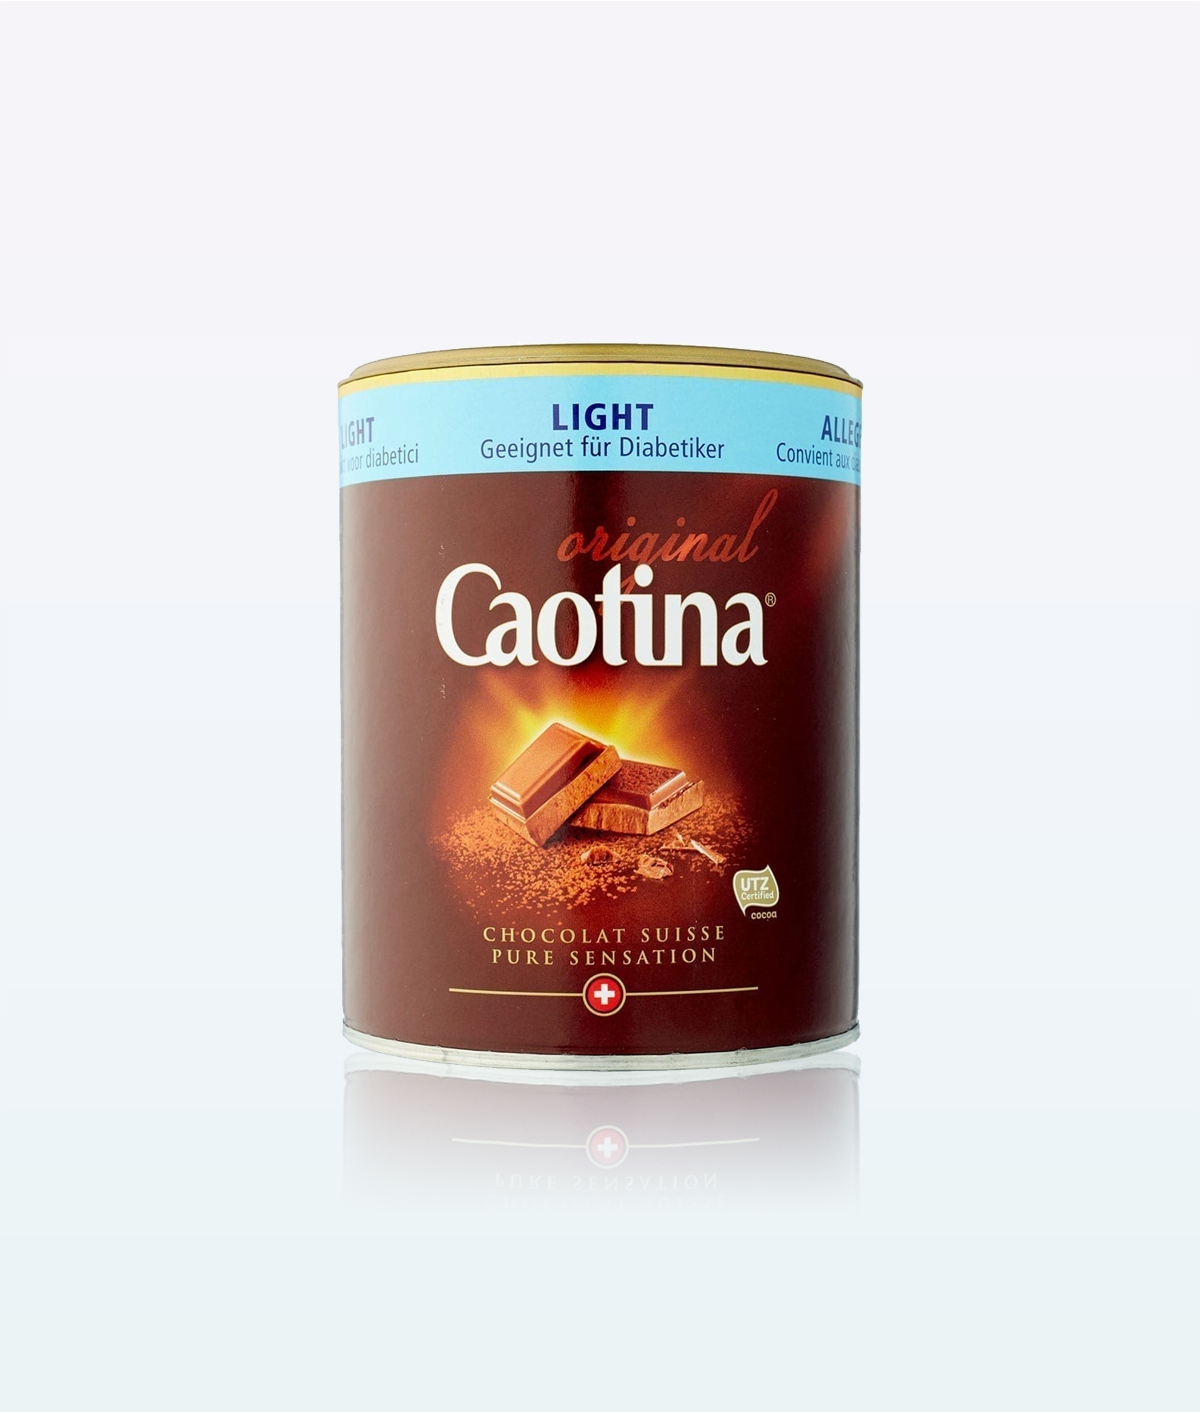 Caotina Chocolate Powder Original light